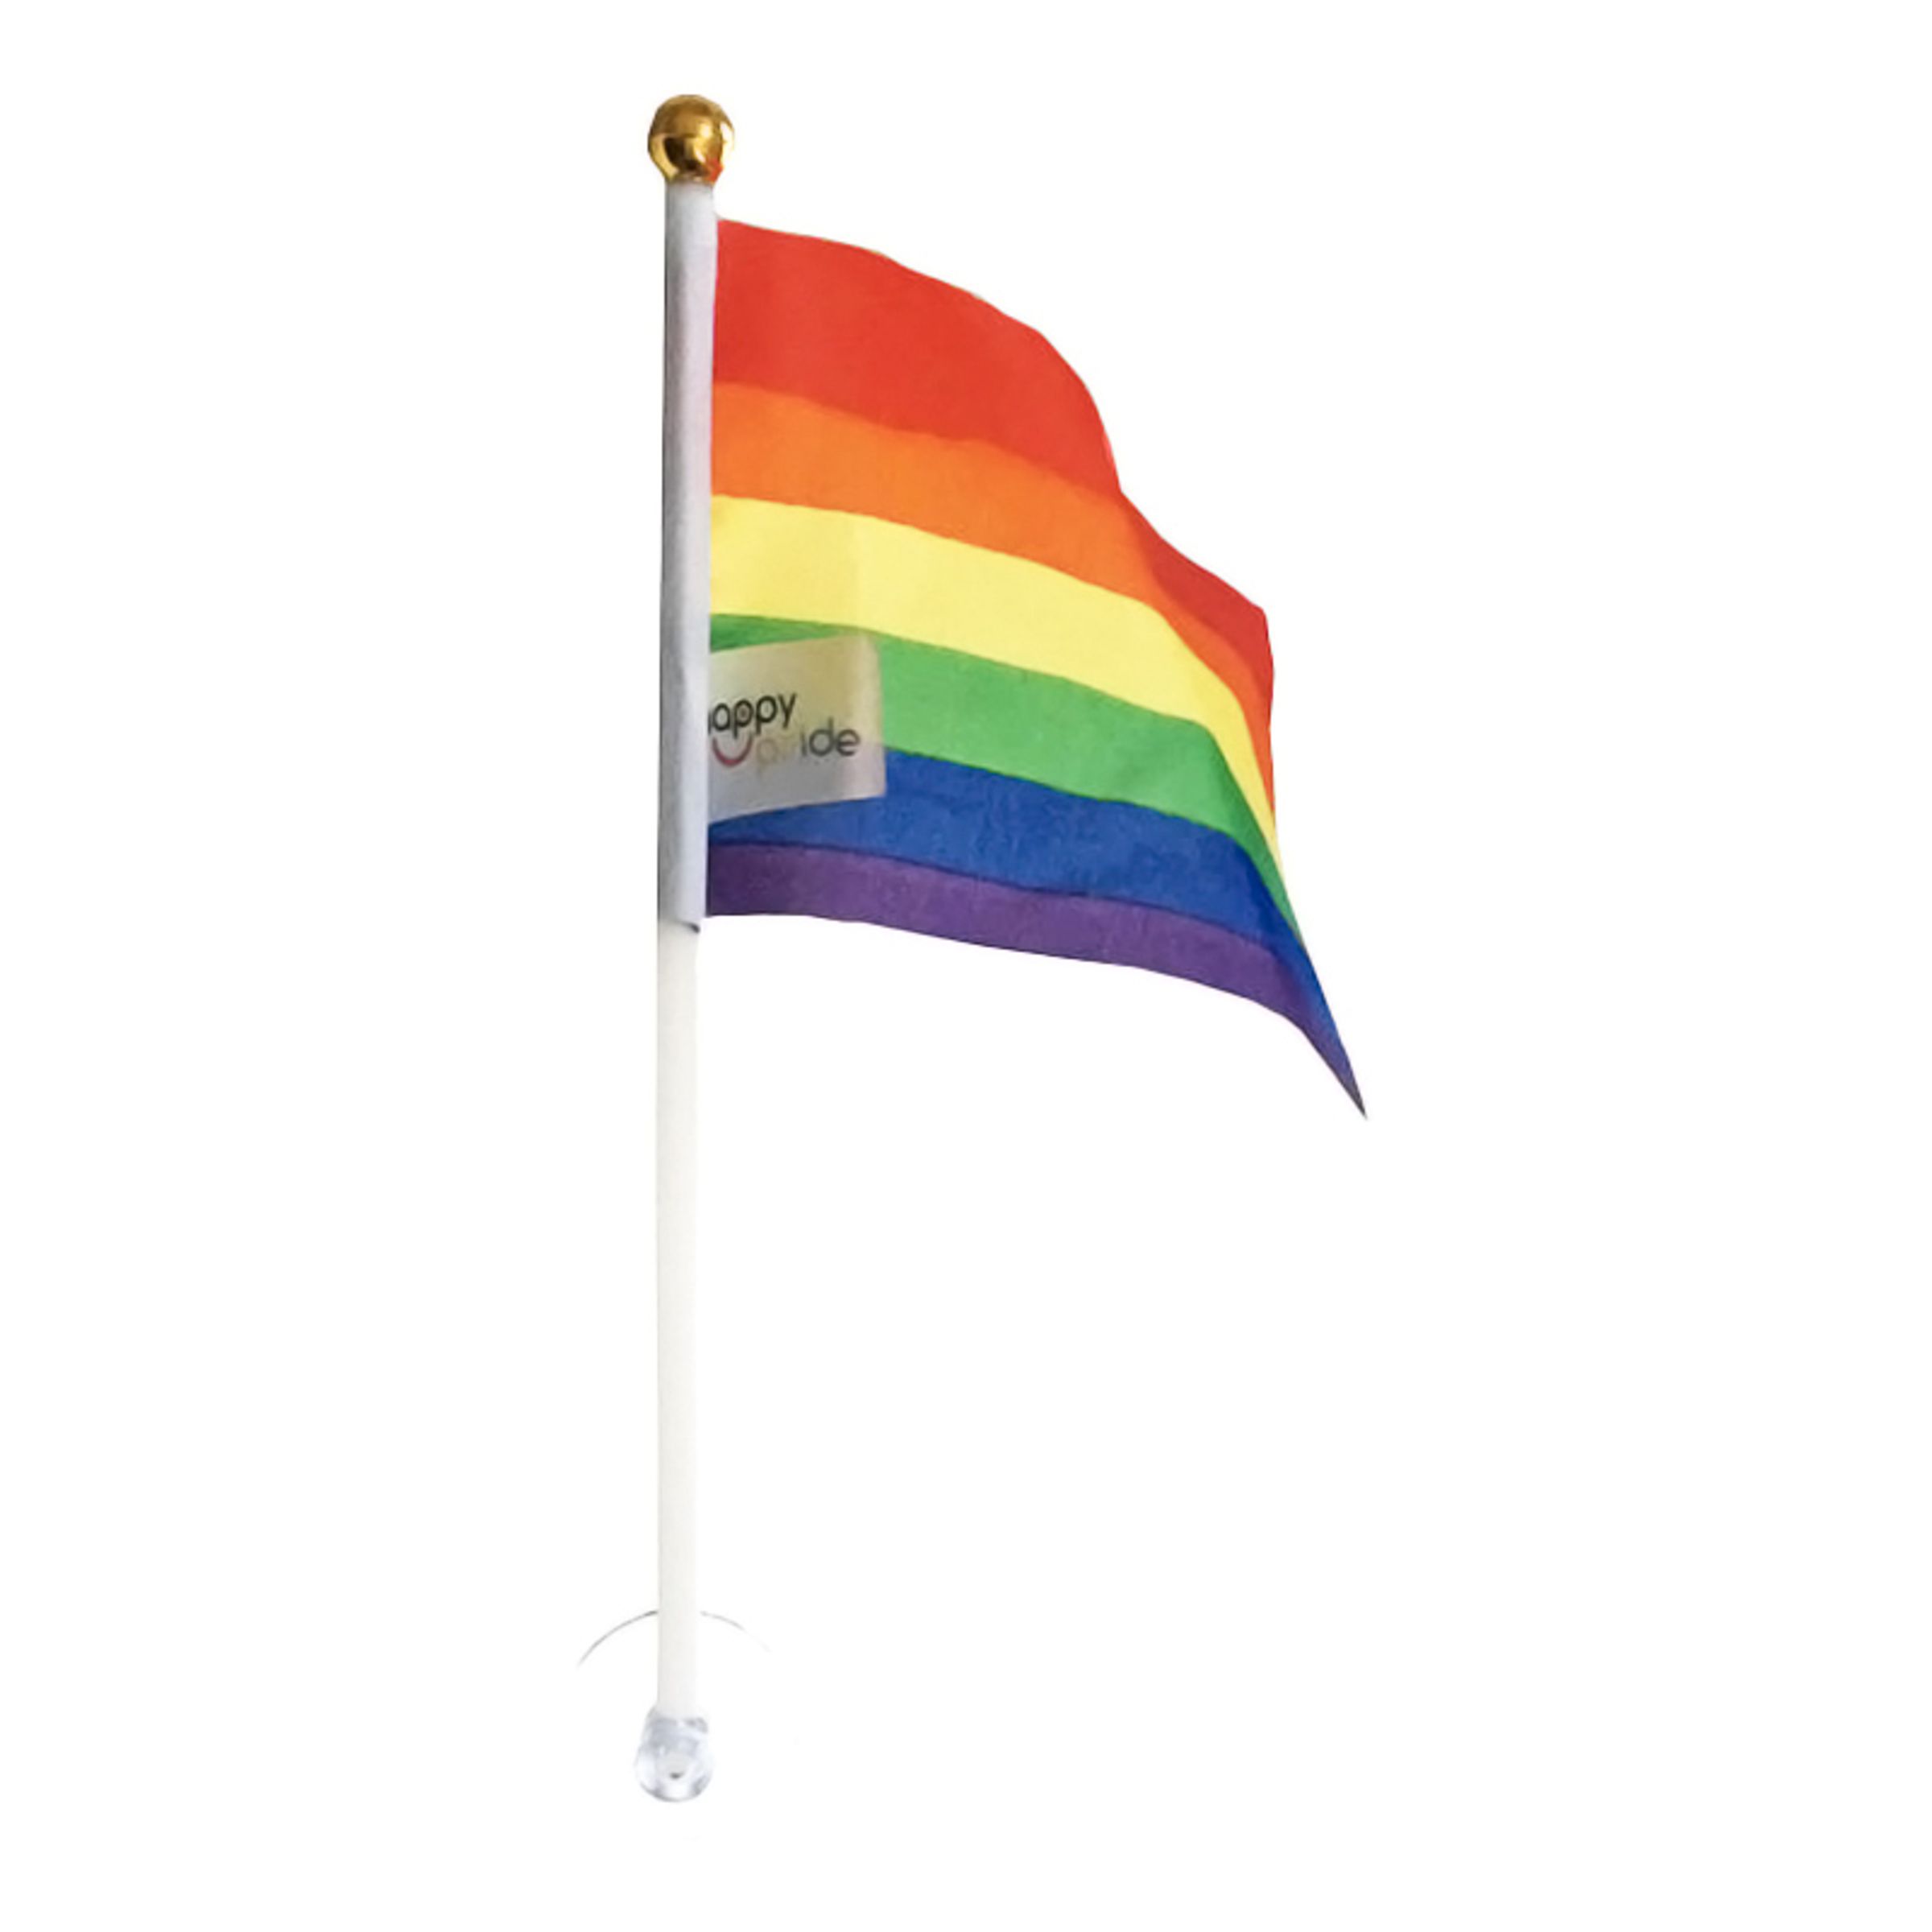 Prideflagga med Sugpropp - 2-pack